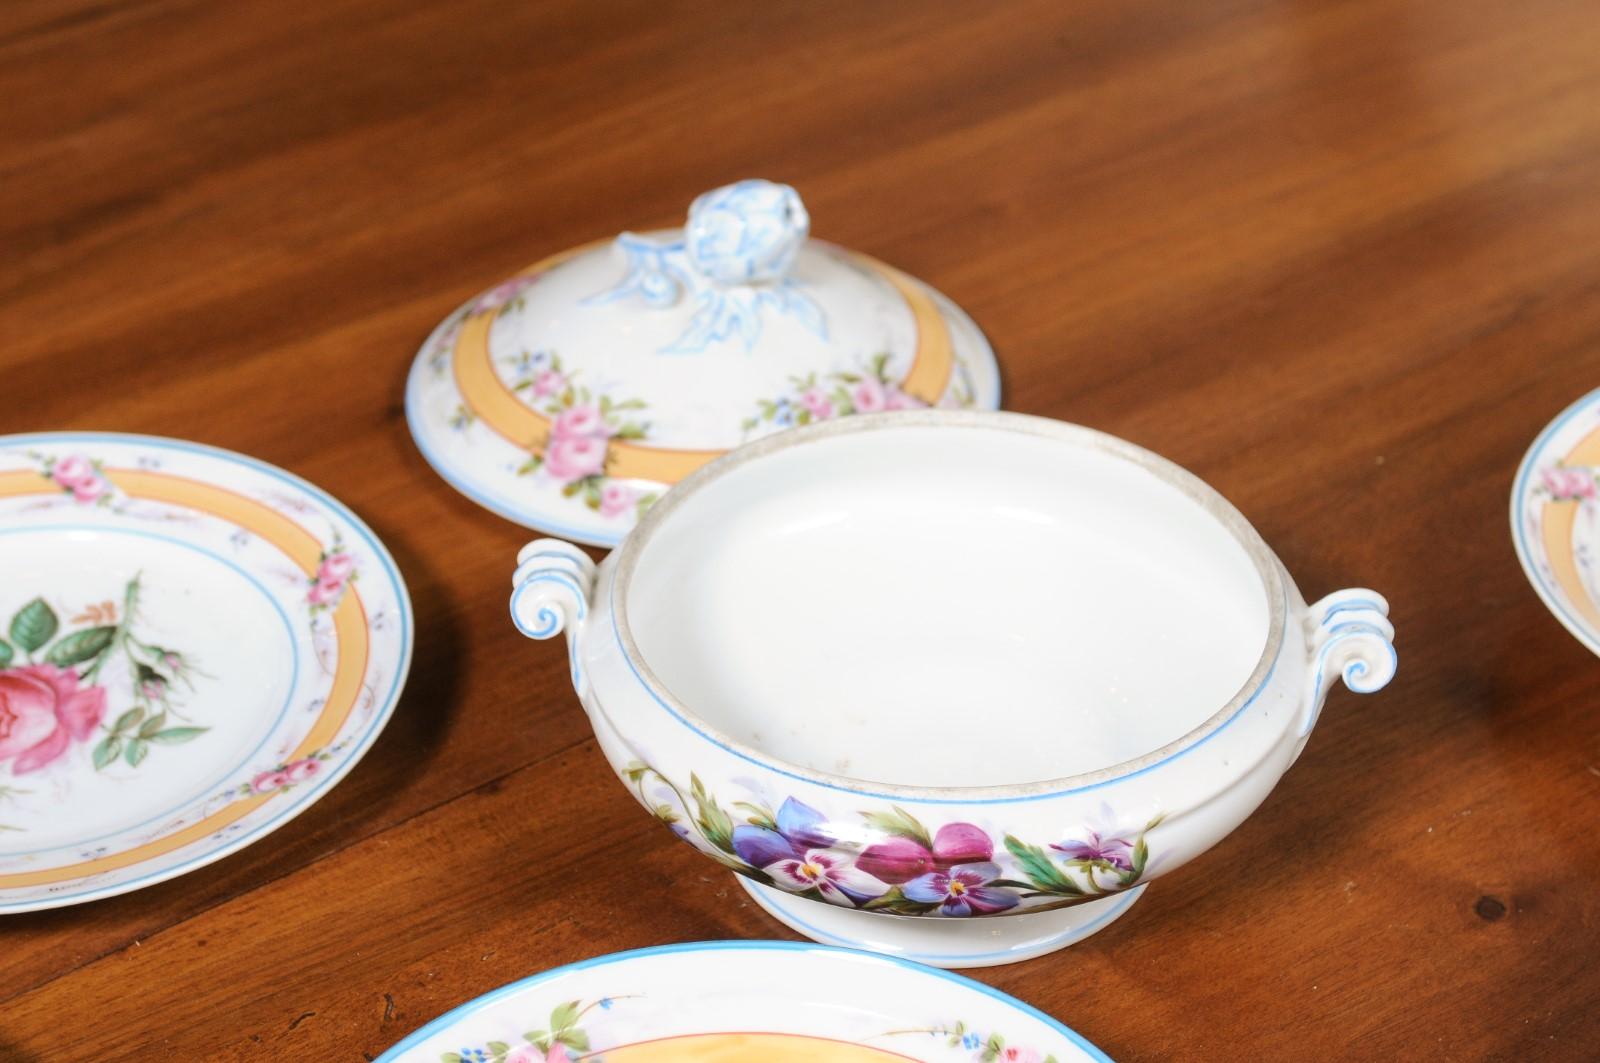 Porcelaine de Paris 19th Century Floral Dish Set with Casserole and Plates For Sale 8